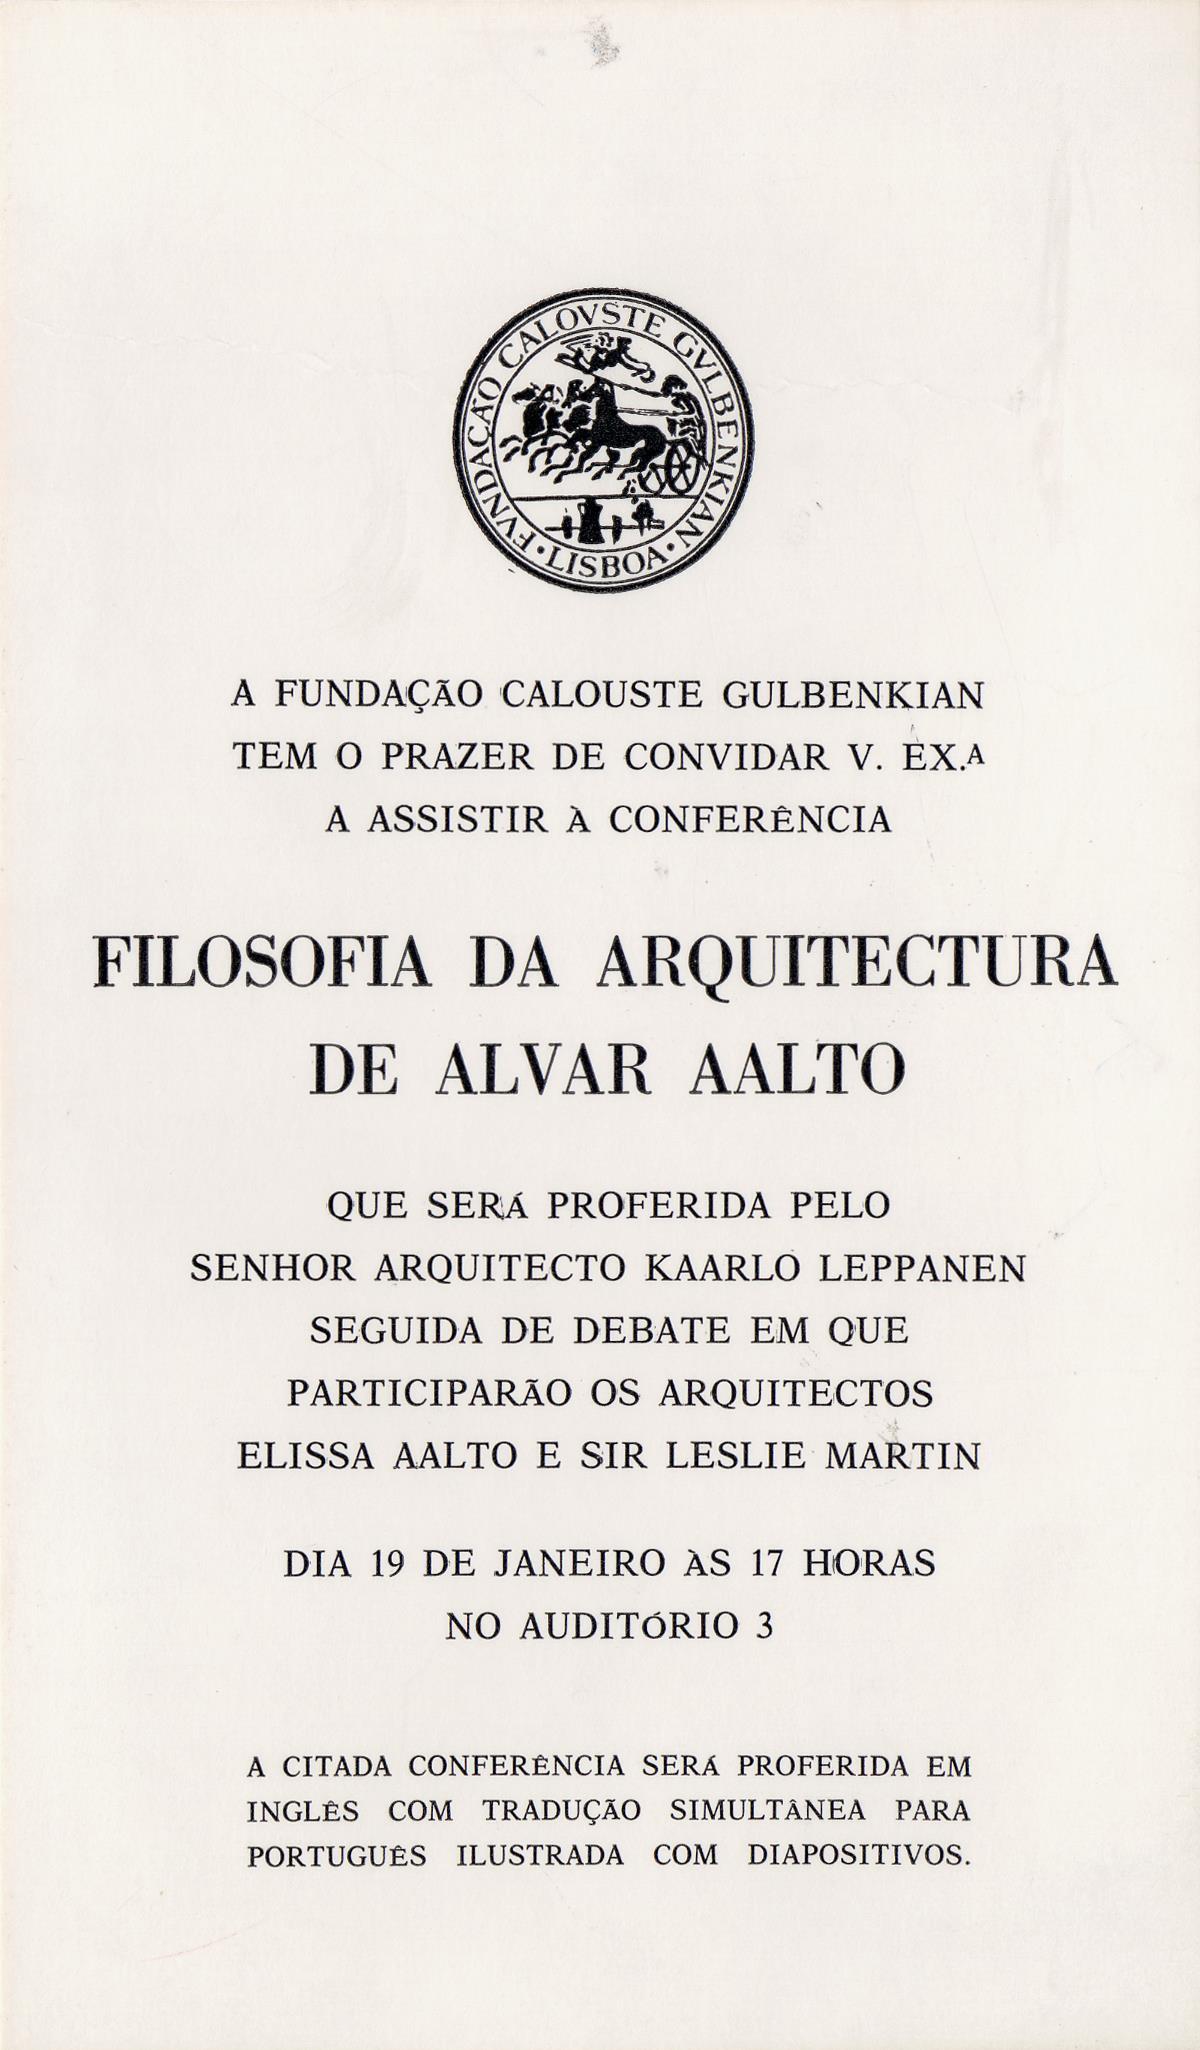 Filosofia da Arquitectura de Alvar Aalto [conferência por Kaarlo Lepannen]